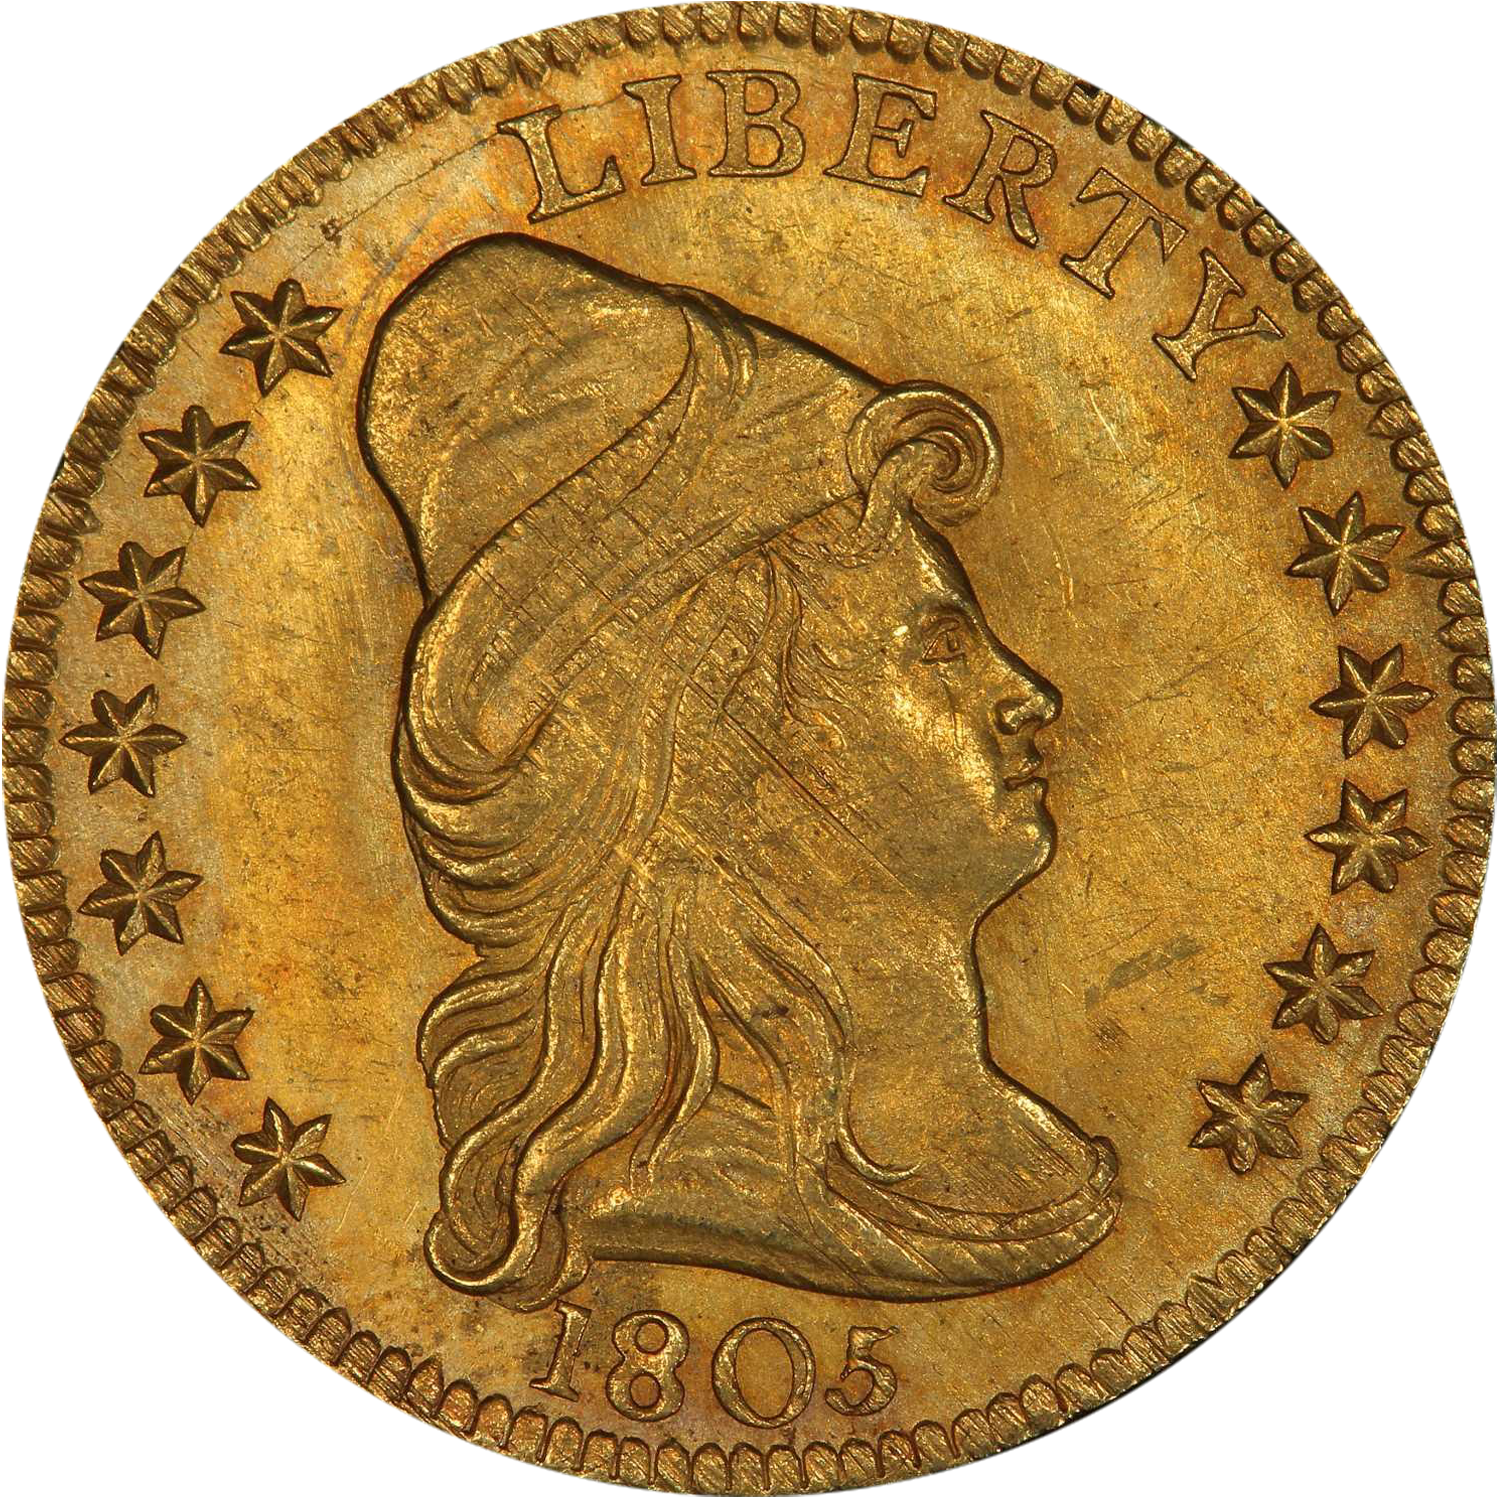 1805 gold quarter eagle auction guide